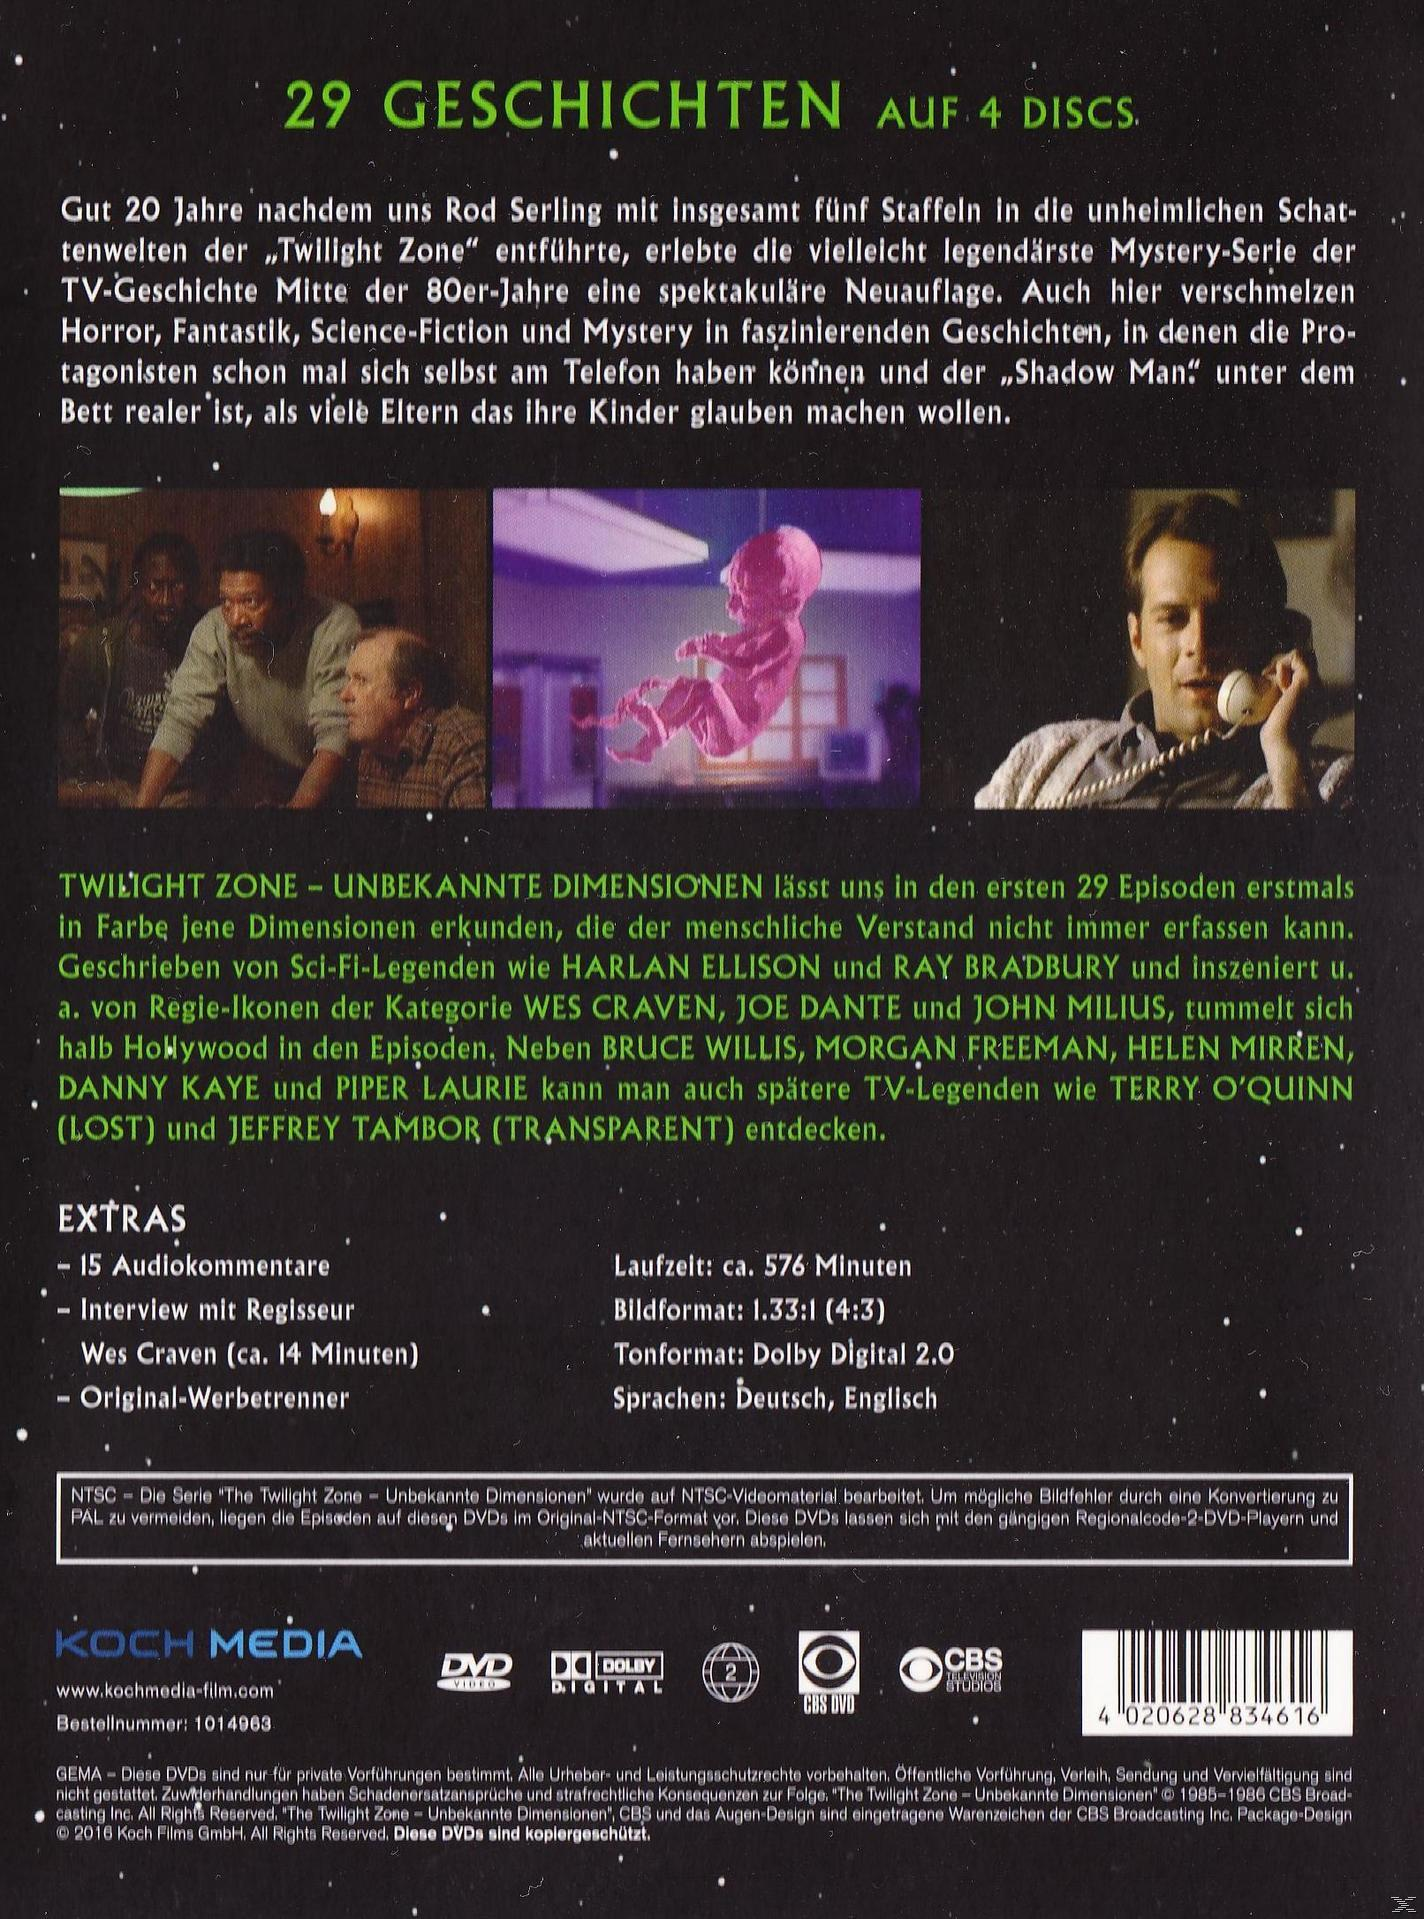 The Twilight Dimensionen DVD - 1 Zone Unbekannte